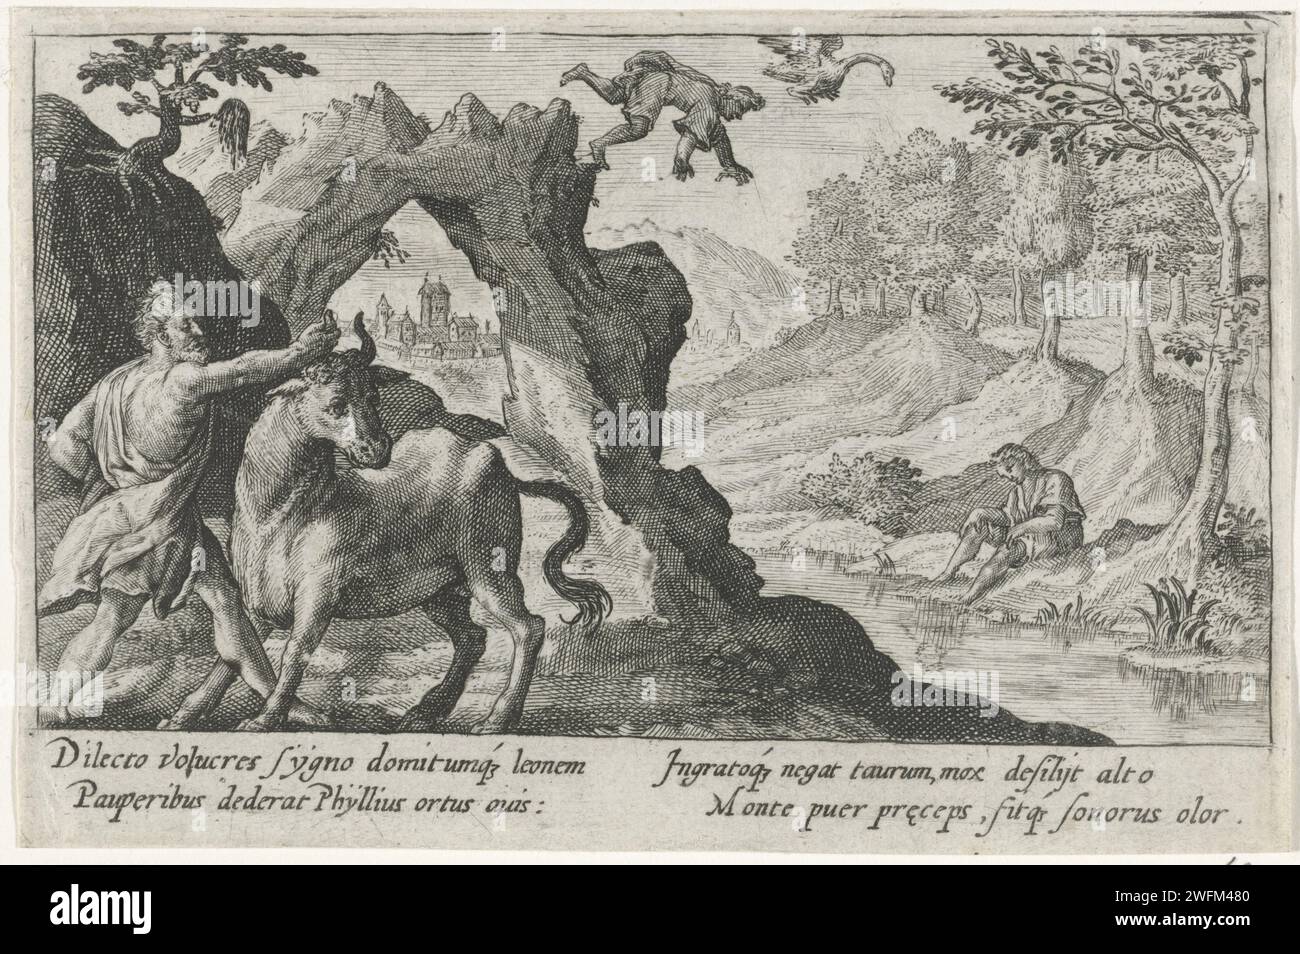 Cygnus saute d'un rocher, Crispijn van de passe (I), 1602 - 1607 print Phylius refuse de donner le taureau qu'il a attrapé à Cygnus. Cygnus, le fils d'Apollon et d'Hyria, en est dépouillé et saute d'un rocher. Il est transformé en cygne par son père. Dans la marge, une légende de quatre lignes, en deux colonnes, en latin. Gravure sur papier de Cologne Cygne, fils d'Apollon, changé en cygne : parce que son ami Phil(l)ius a refusé de lui donner le taureau capturé par l'aide d'Hercule, Cycnus, le fils d'Apollon, saute d'une falaise, et est changé en cygne (Ovide, Métamorphoses VII 371) Banque D'Images